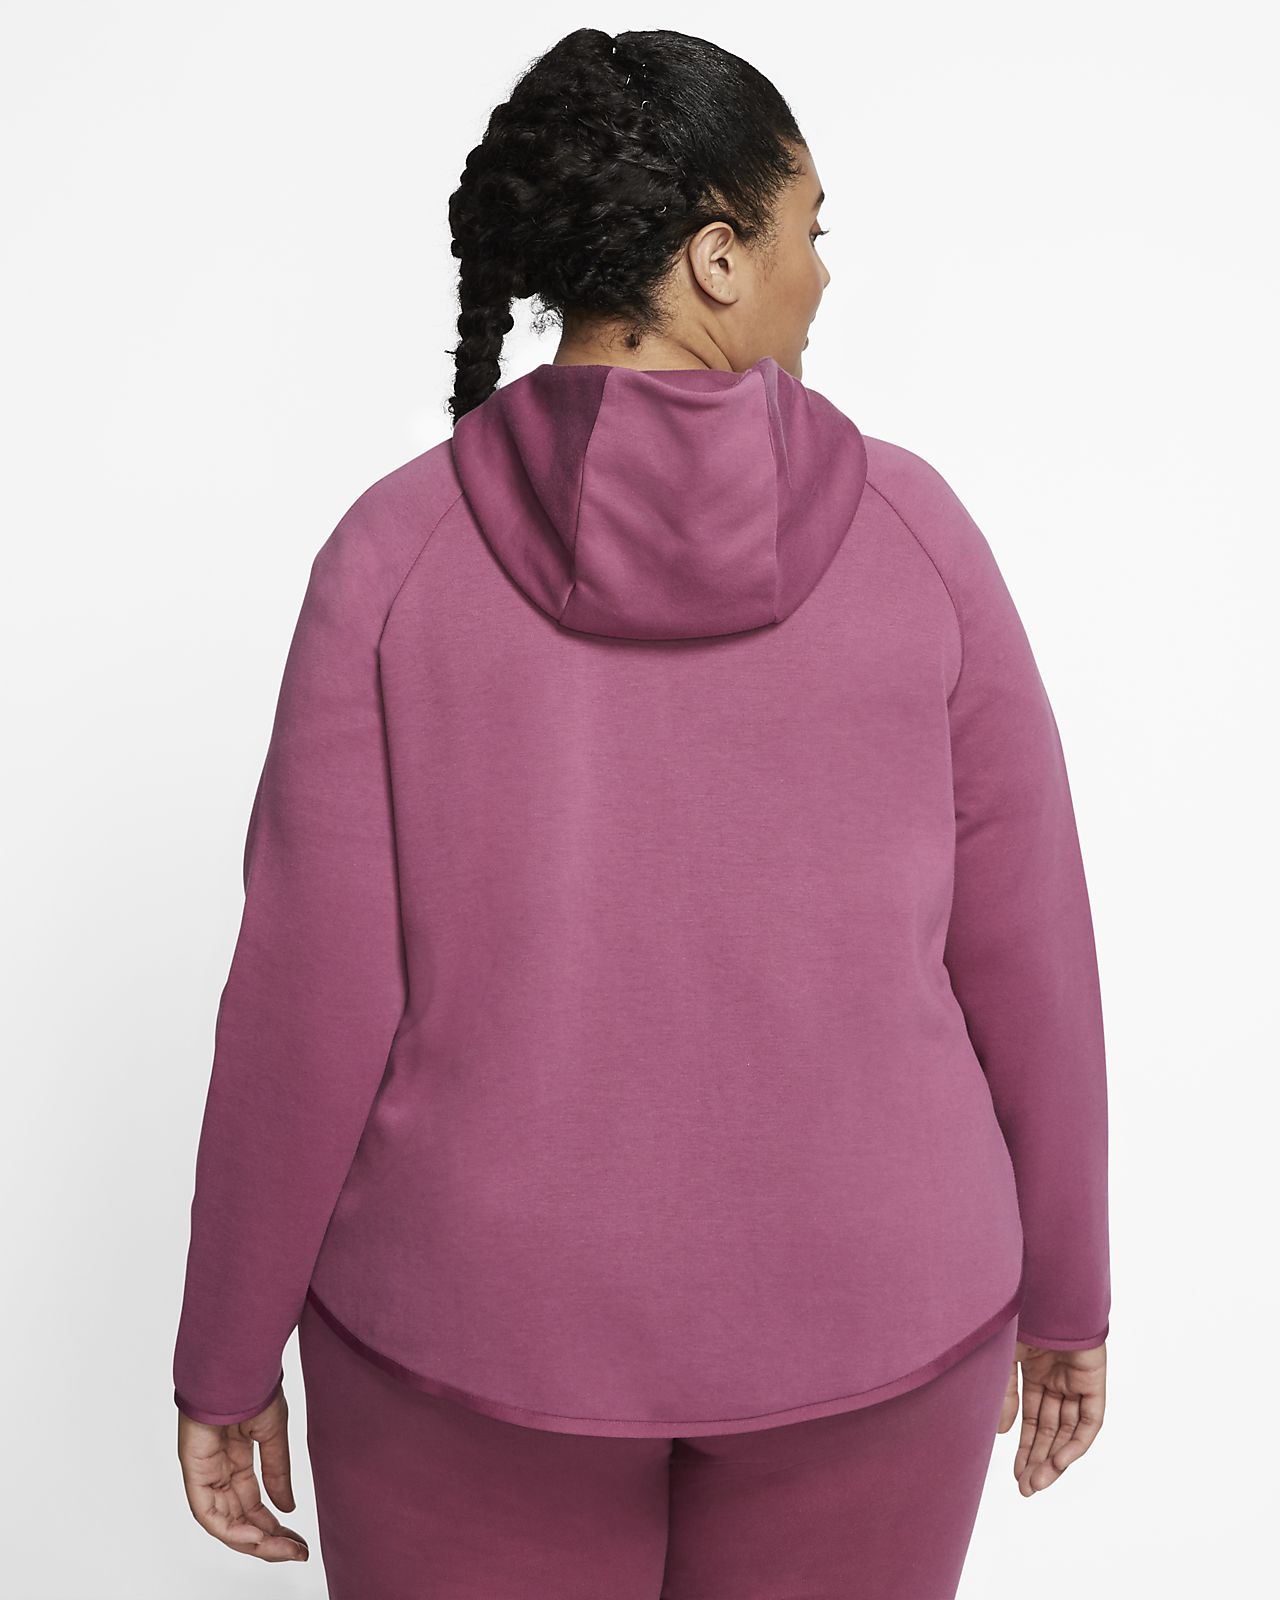 nike tech fleece hoodie purple